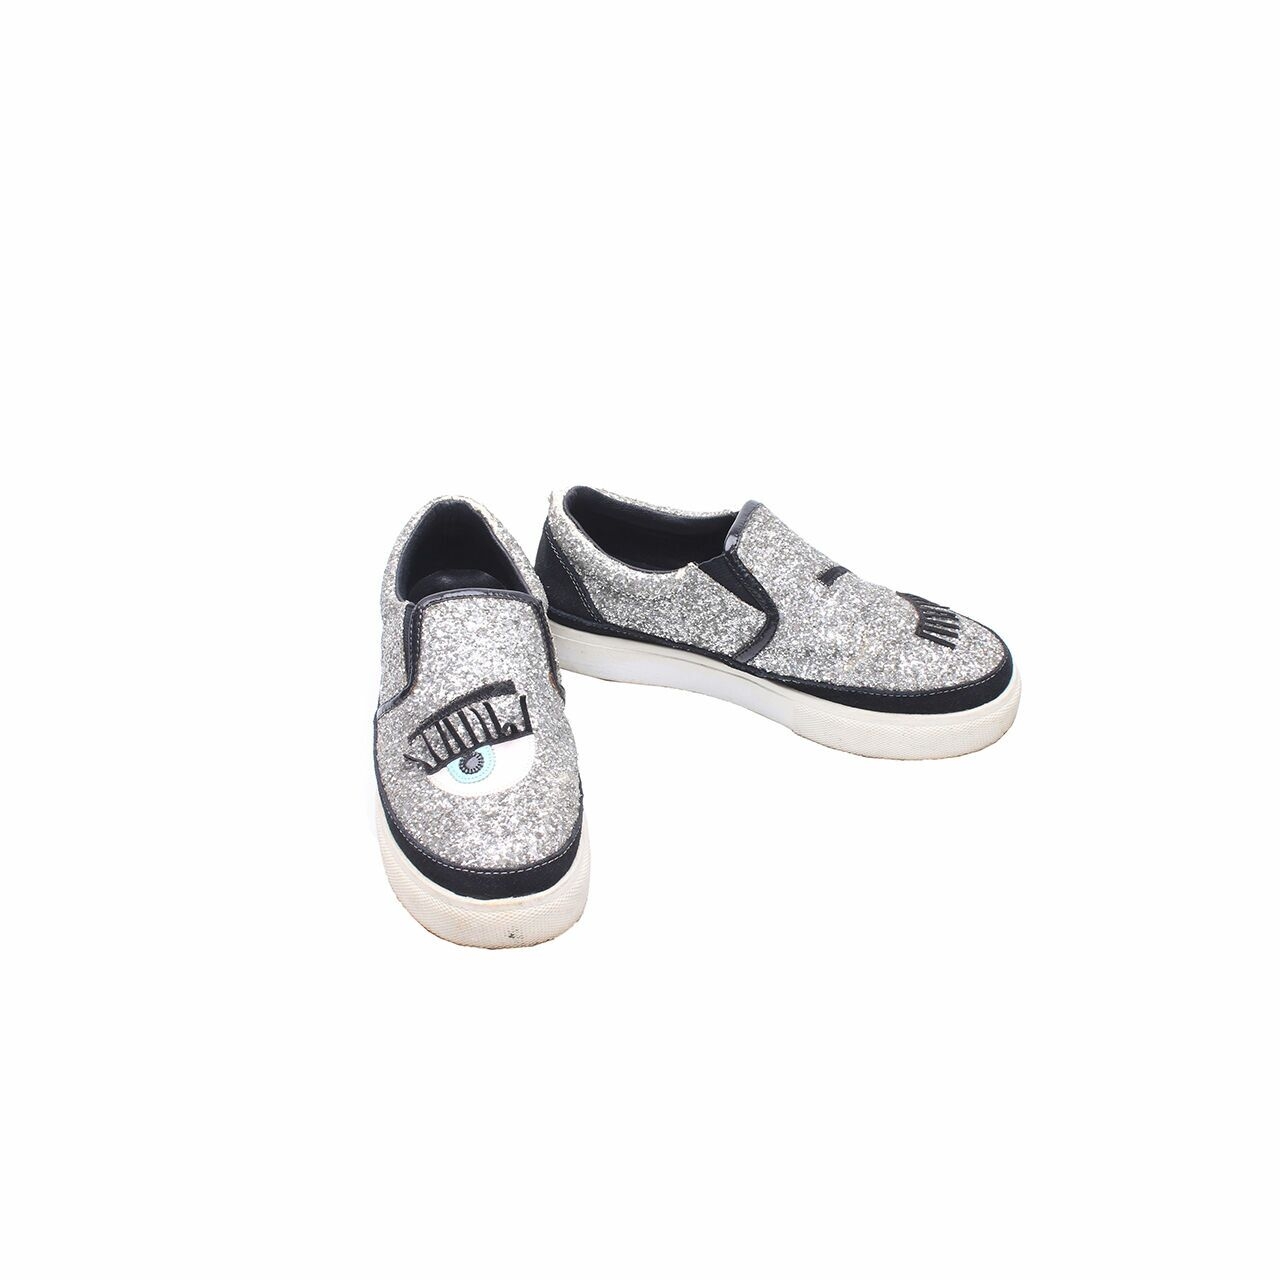 Chiara Ferragni Silver Sneakers